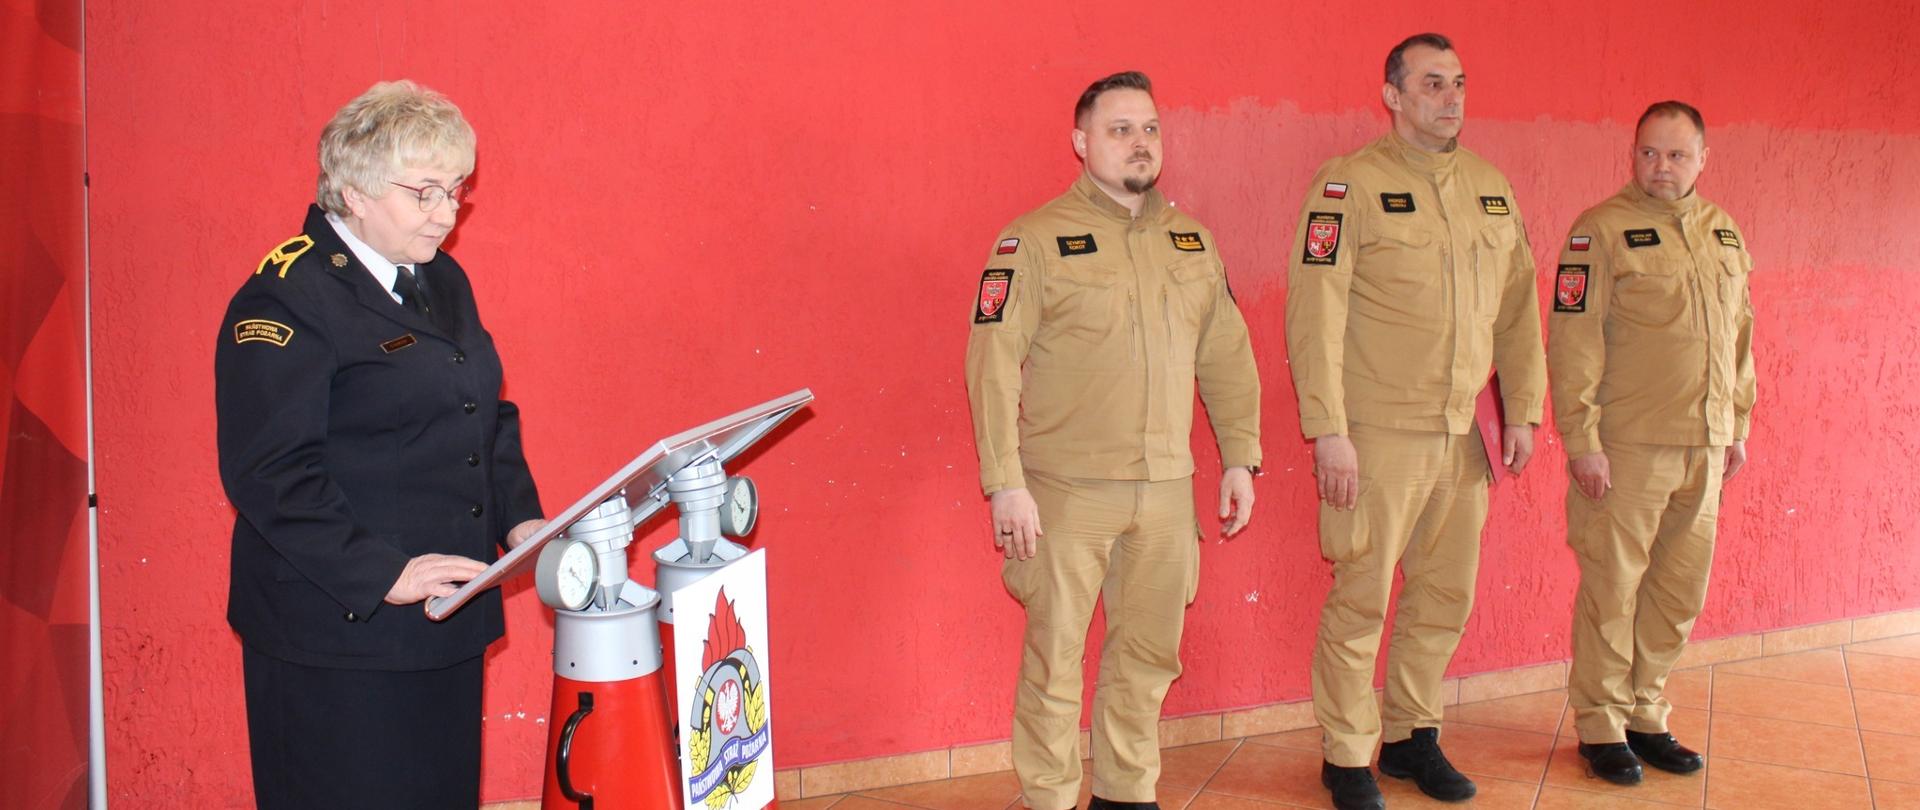 Na tle czerwonej ściany stoi trzech strażaków w jasnych mundurach. Z lewej strony przy mównicy funkcjonariuszka w mundurze wyjściowym.